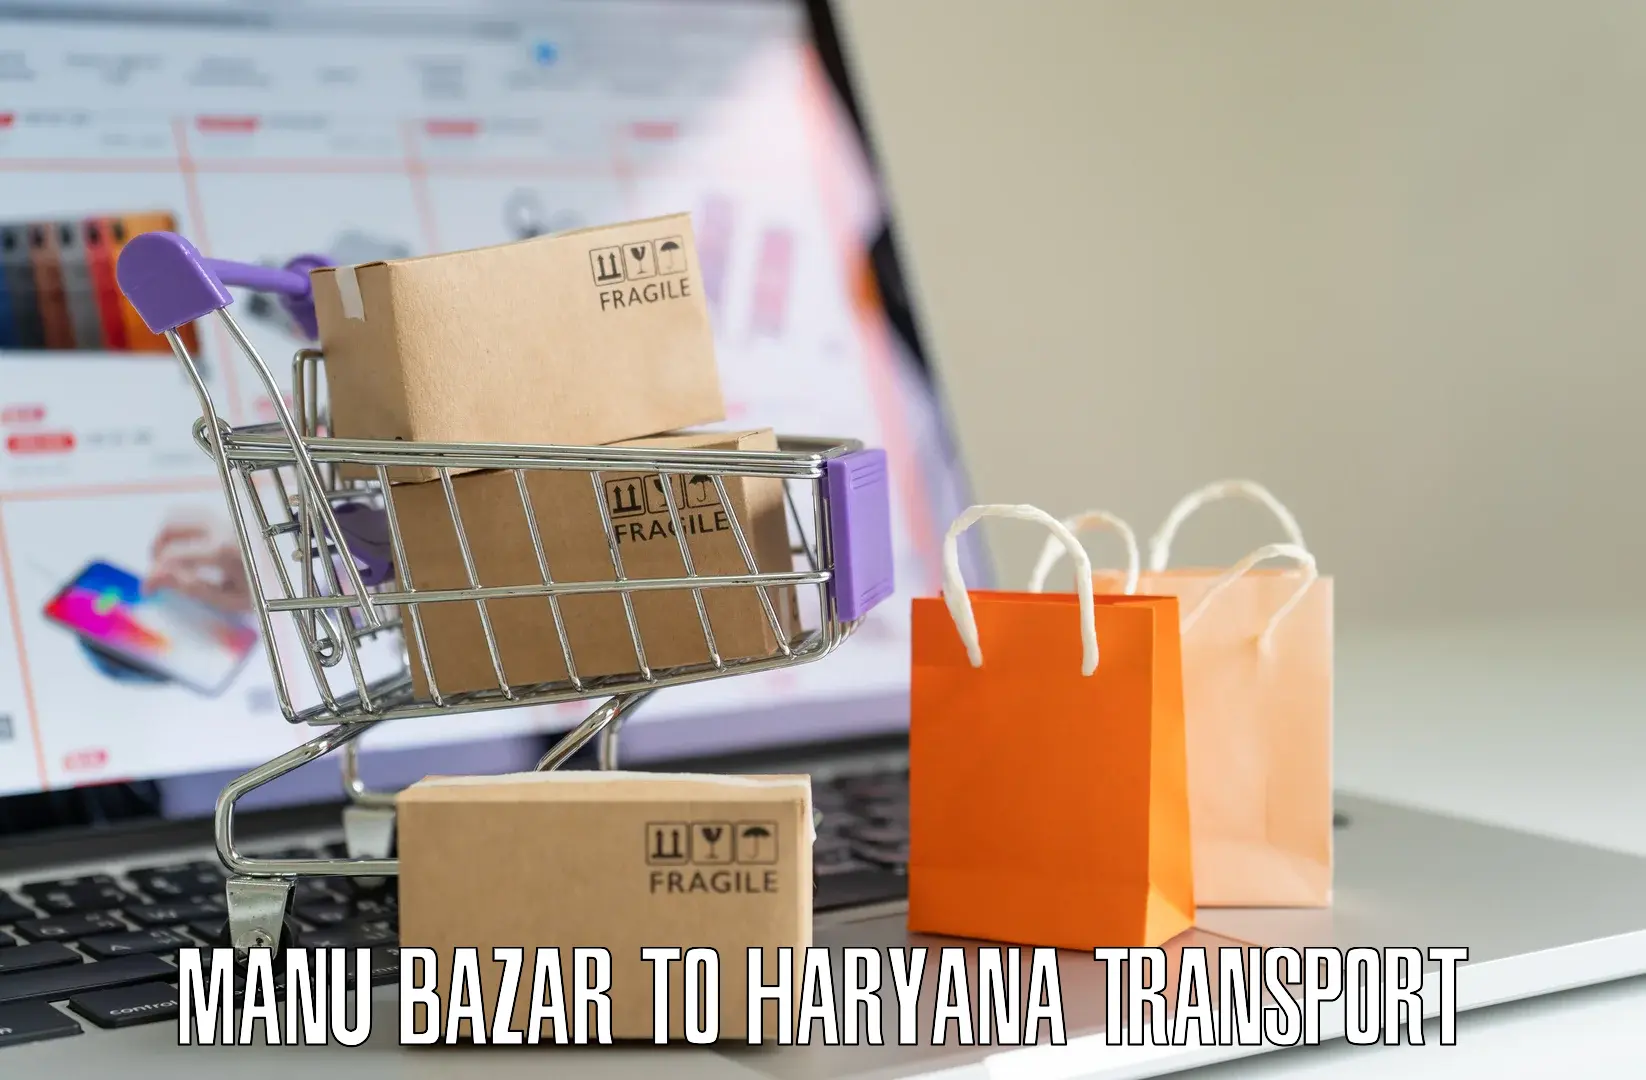 Daily transport service Manu Bazar to Panipat